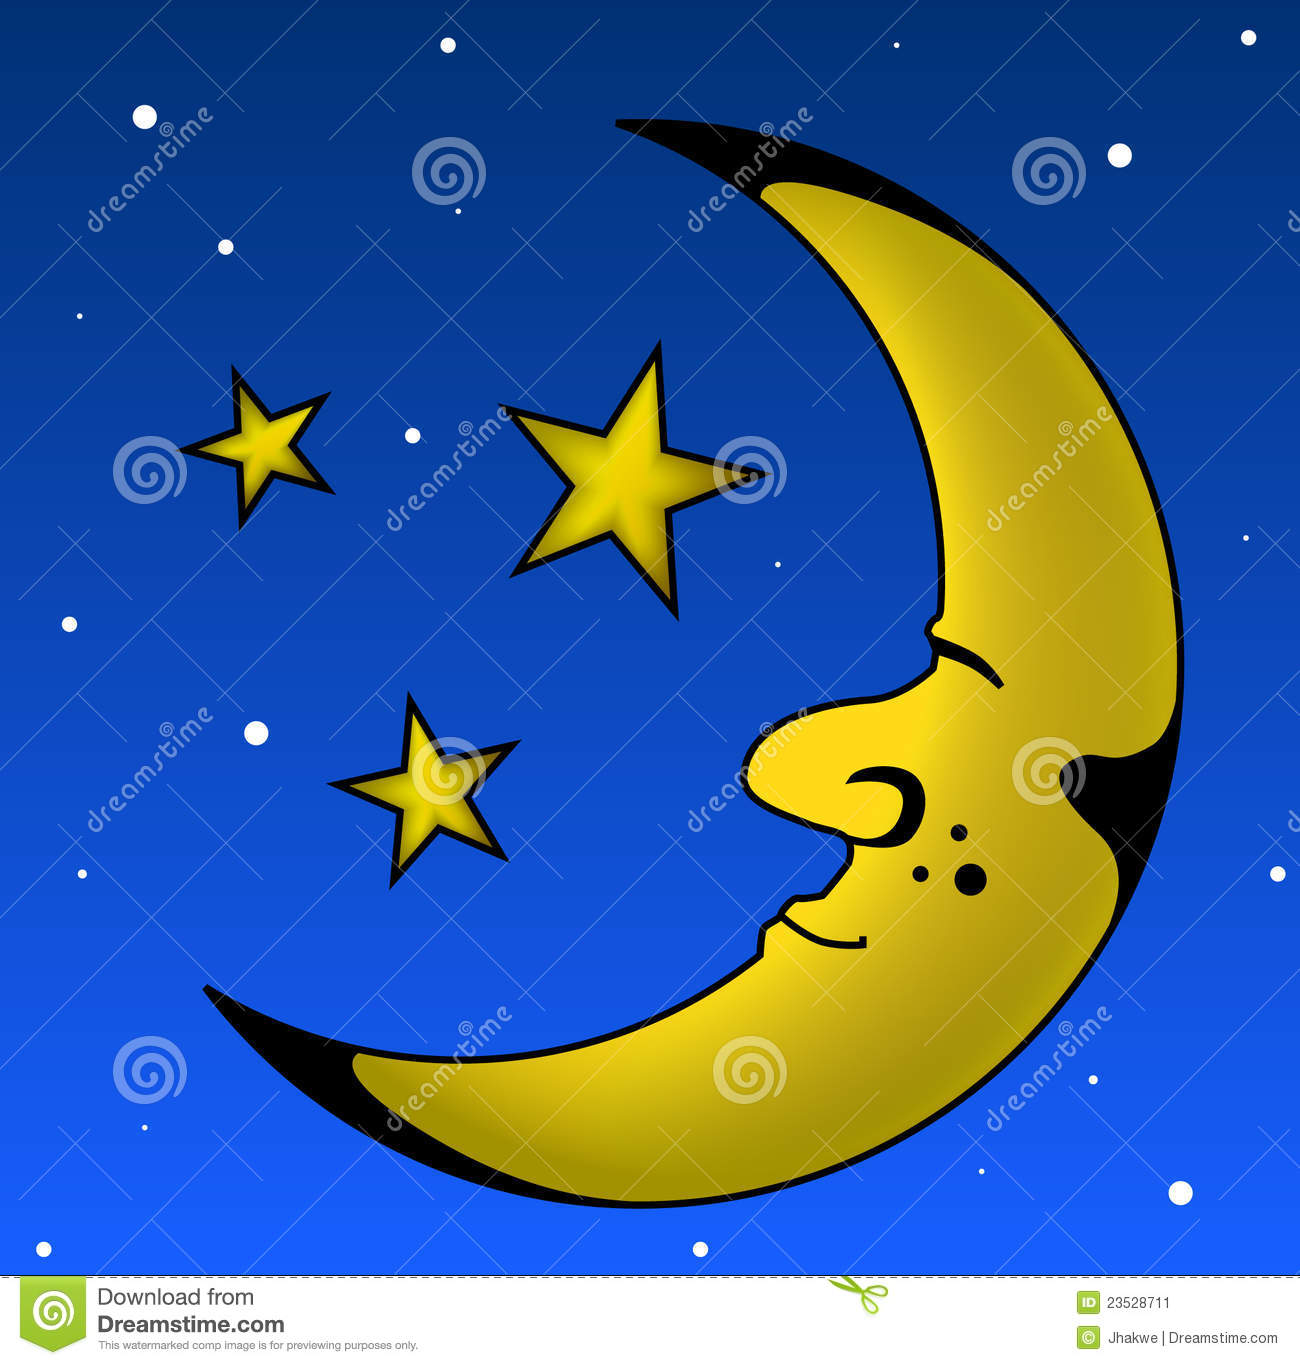 Sleeping Moon Stock Image   Image  23528711